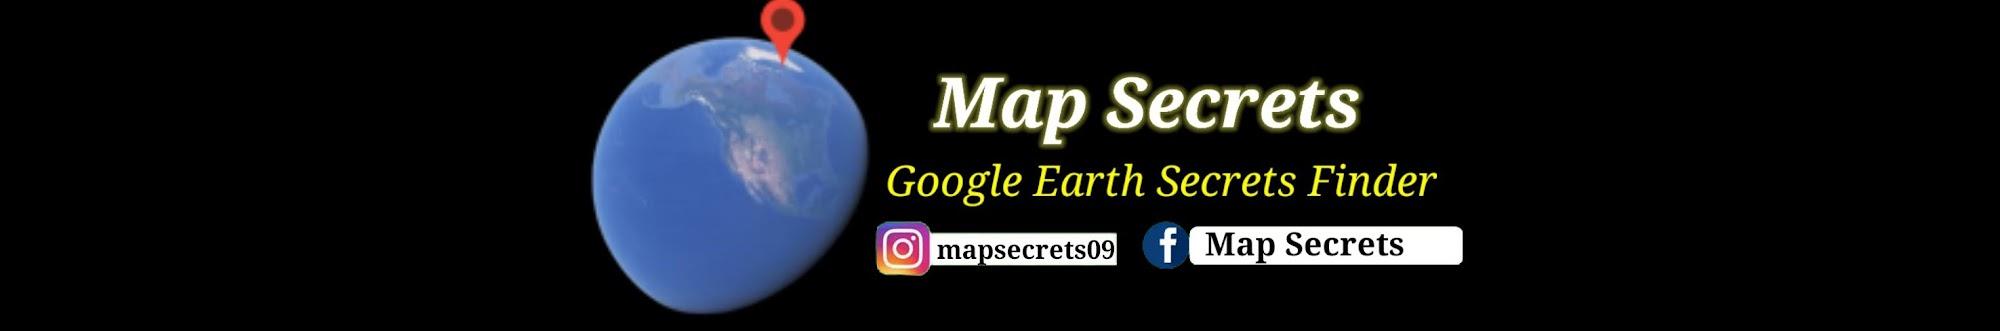 Map Secrets